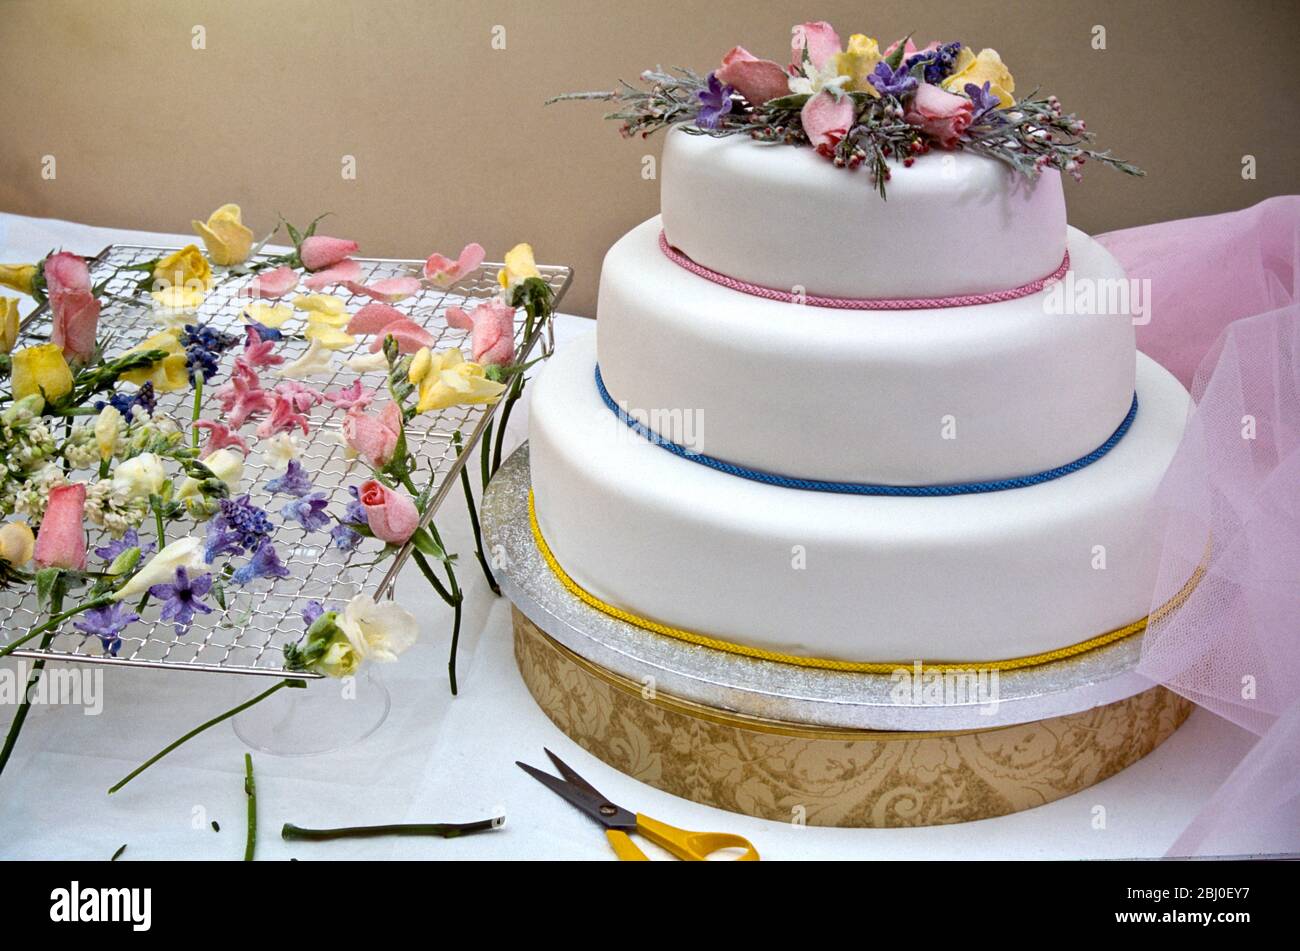 Hochzeitstorte oder Festtorte, mit zuckermatten Blüten und pastellfarbenen Schnüren dekoriert. - Stockfoto